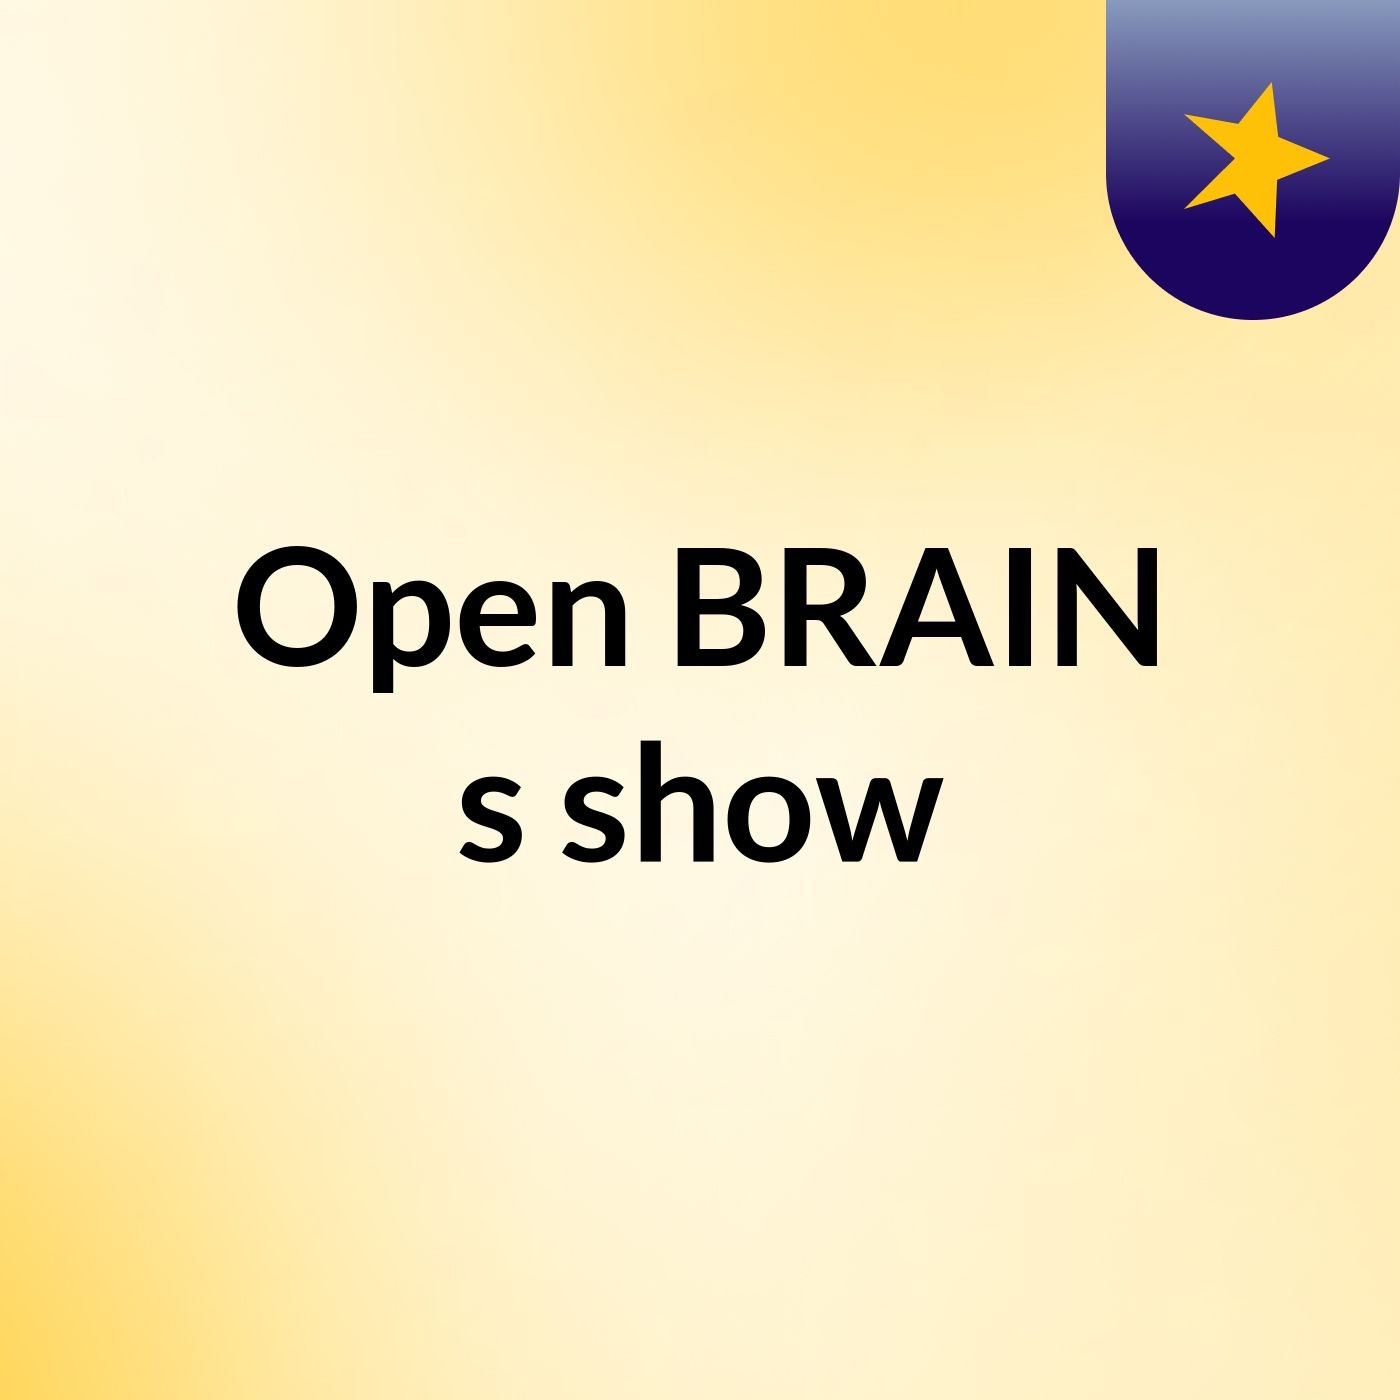 Comunicação Part B - Open BRAIN's show